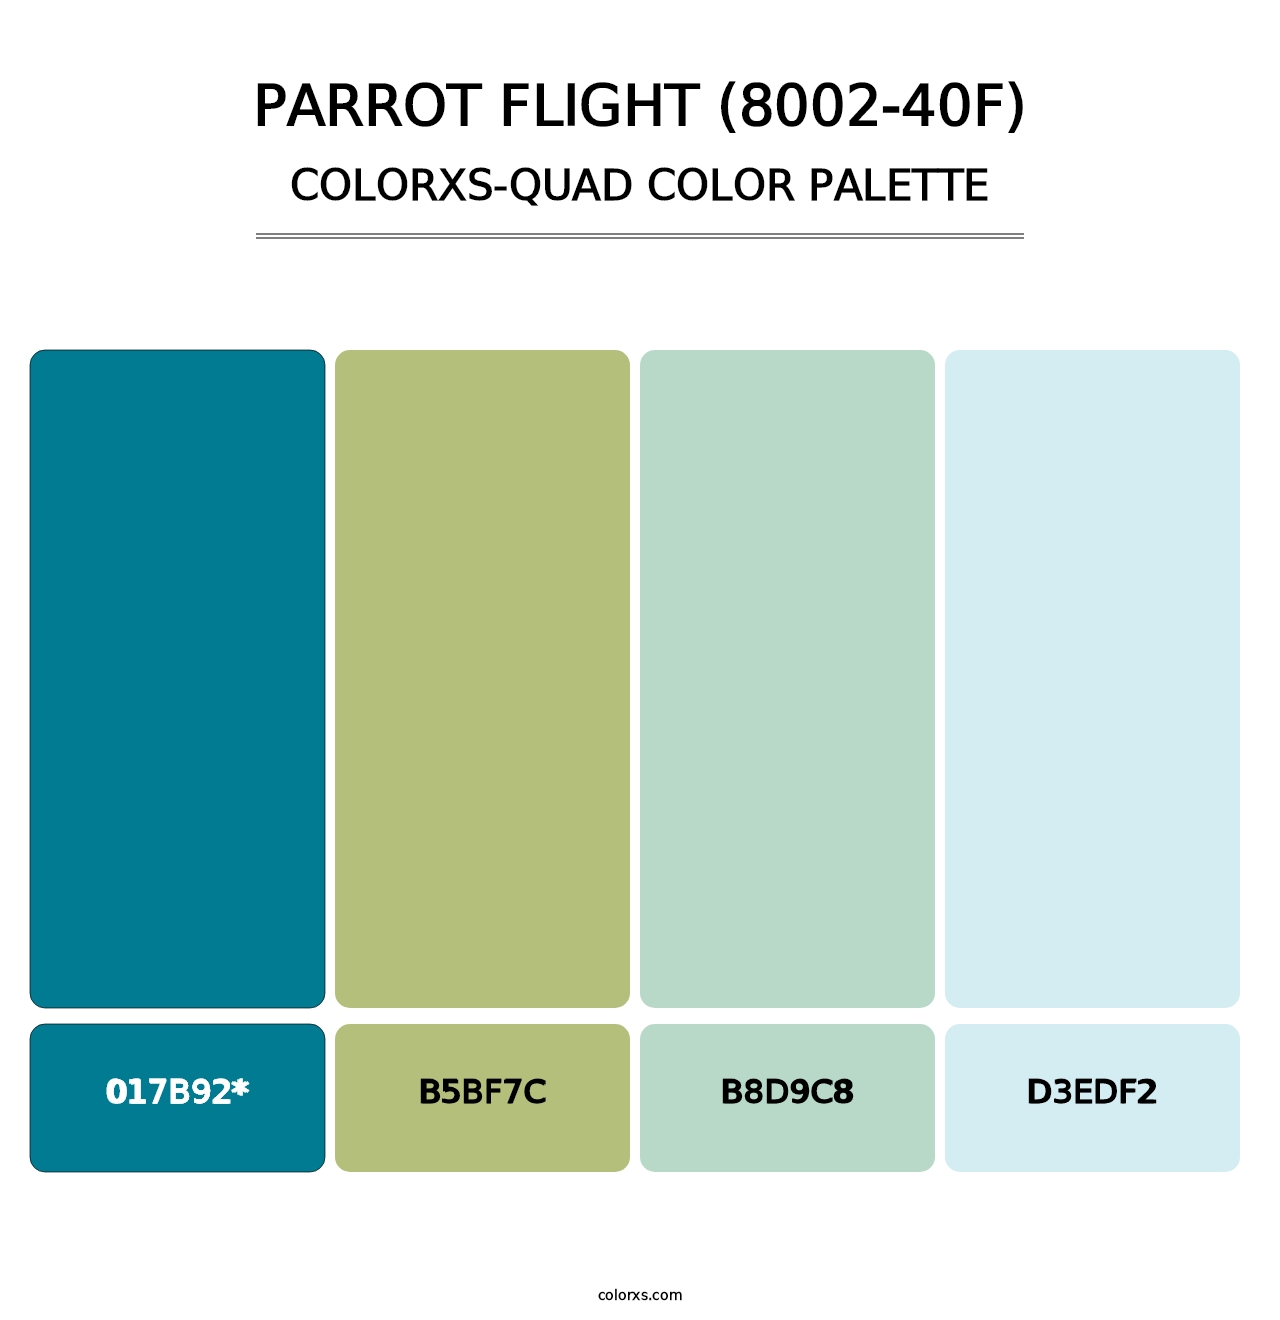 Parrot Flight (8002-40F) - Colorxs Quad Palette